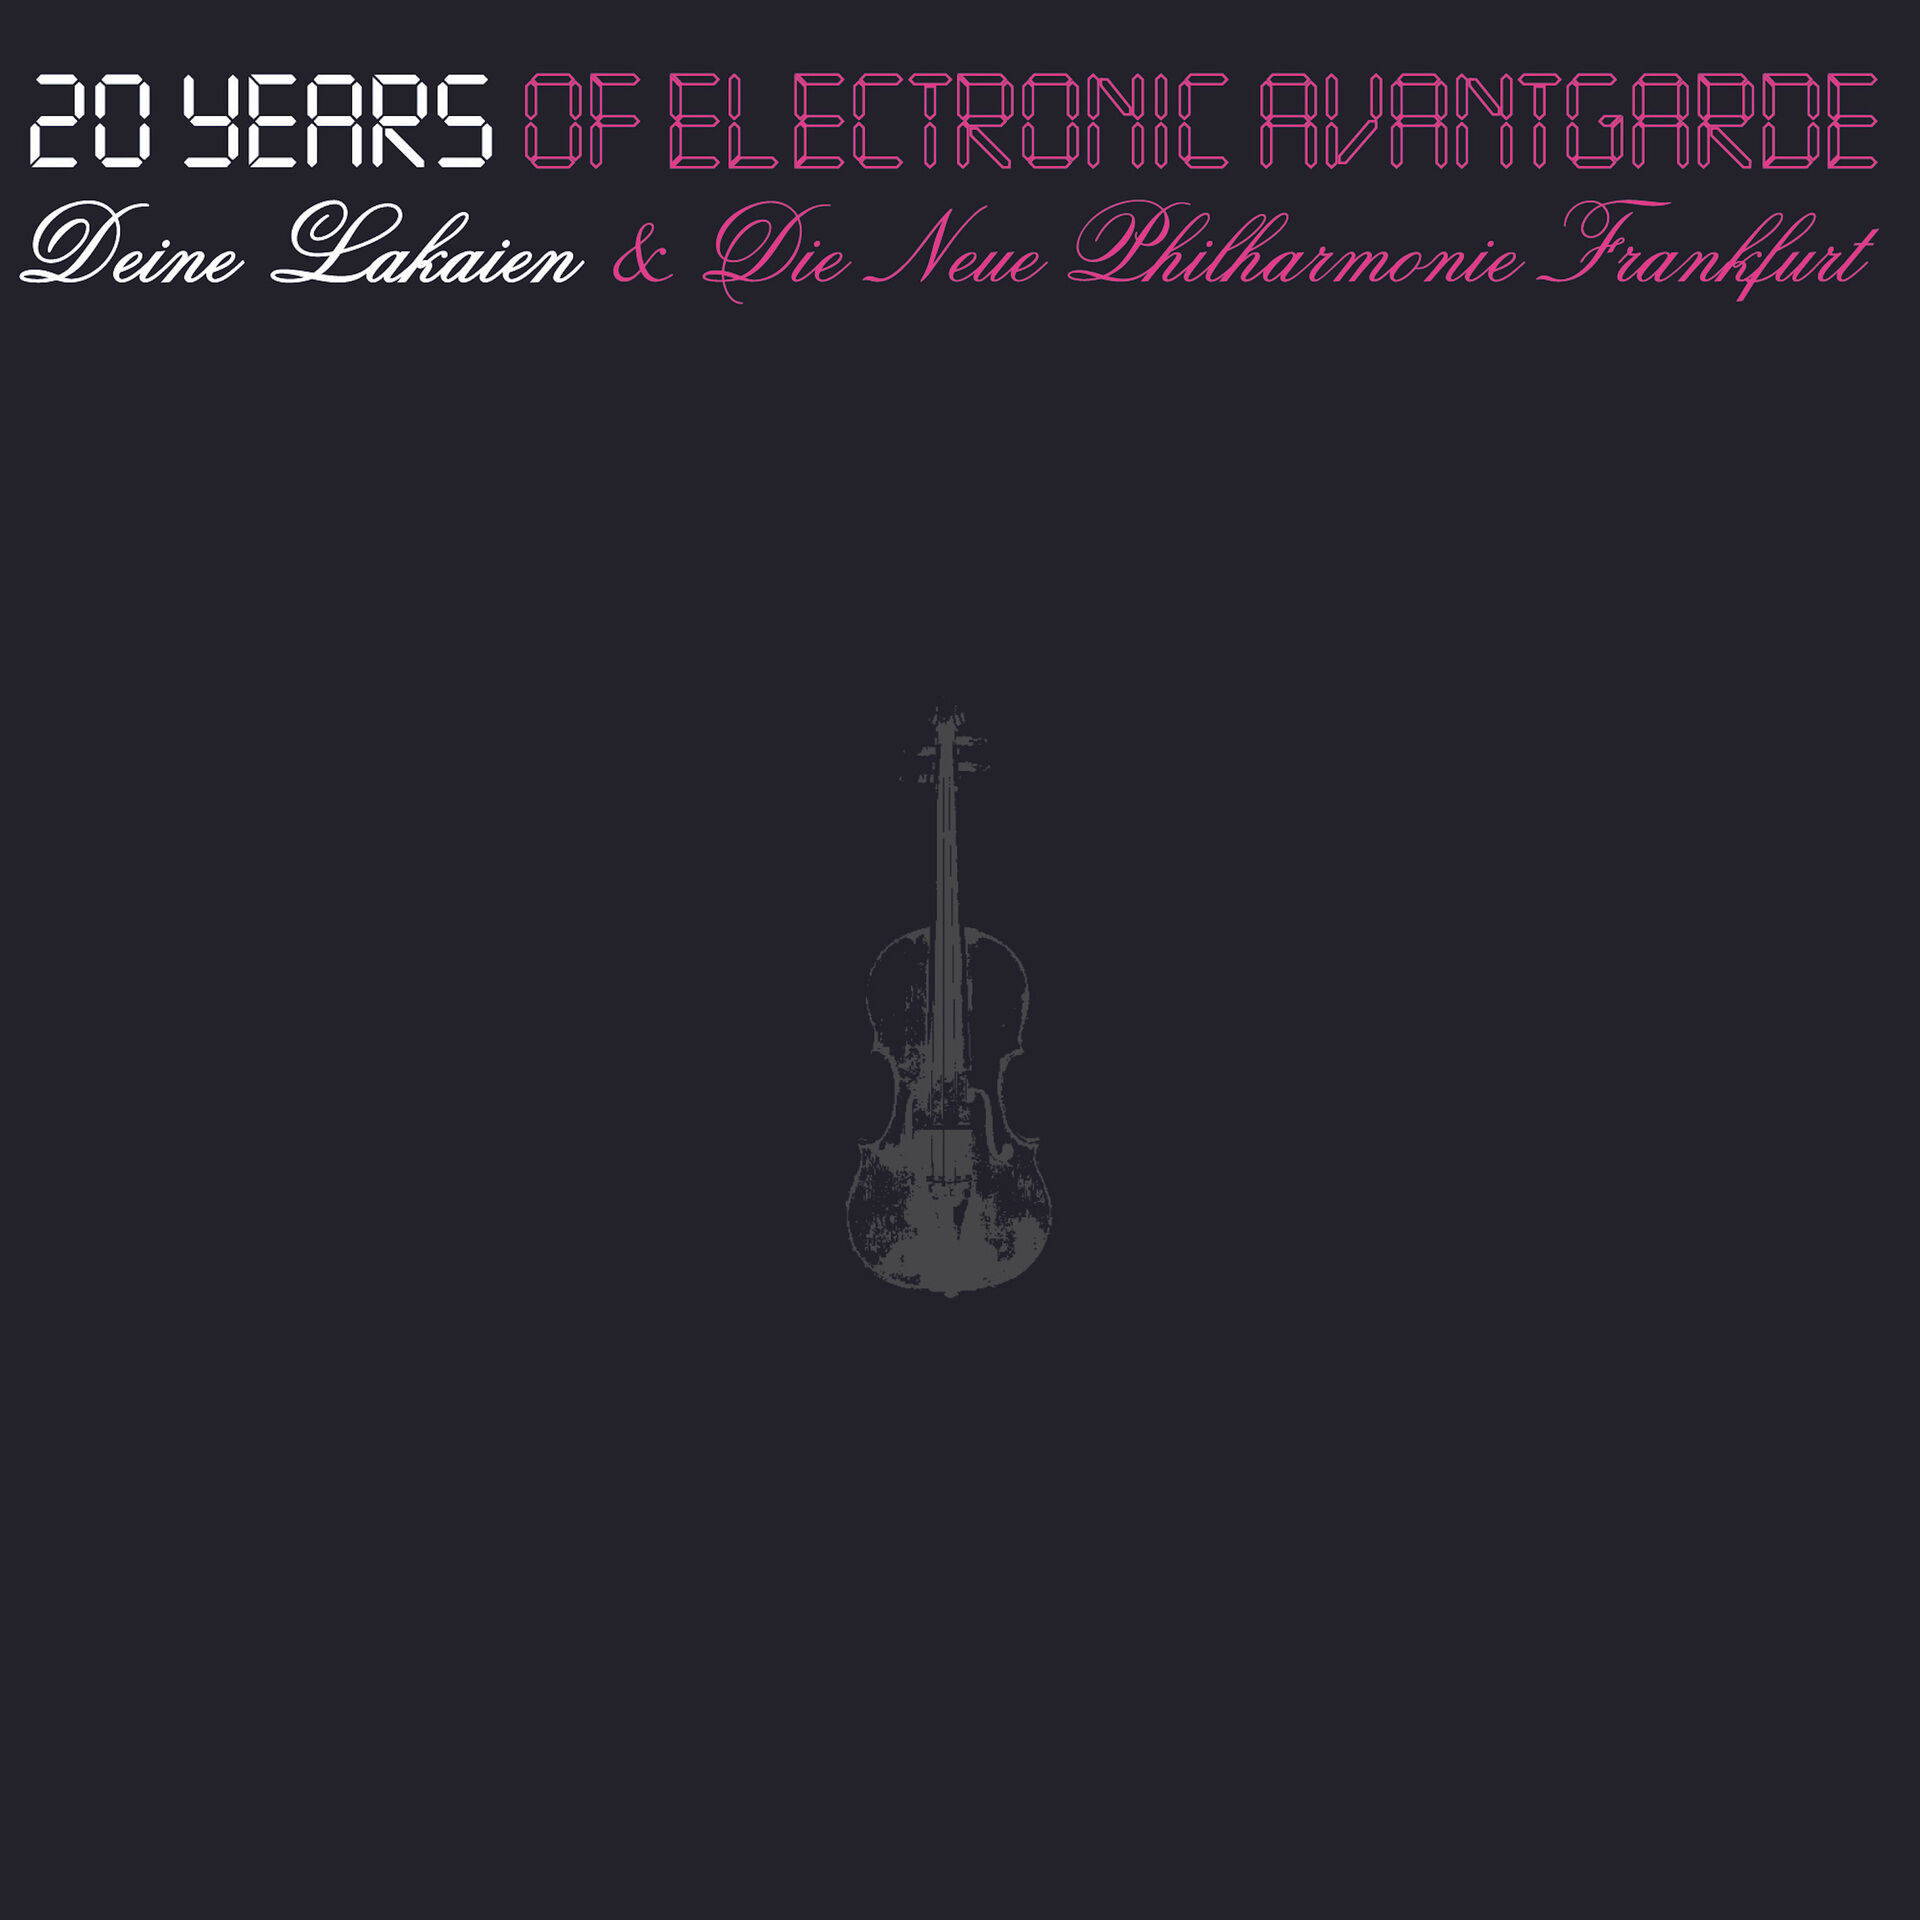 DEINE LAKAIEN & DIE NEUE PHILHARMONIE FRANKFURT - 20 Years Of Electronic Avantgarde [A5 MEDIABOOK 2CD+3DVD BOXCD]